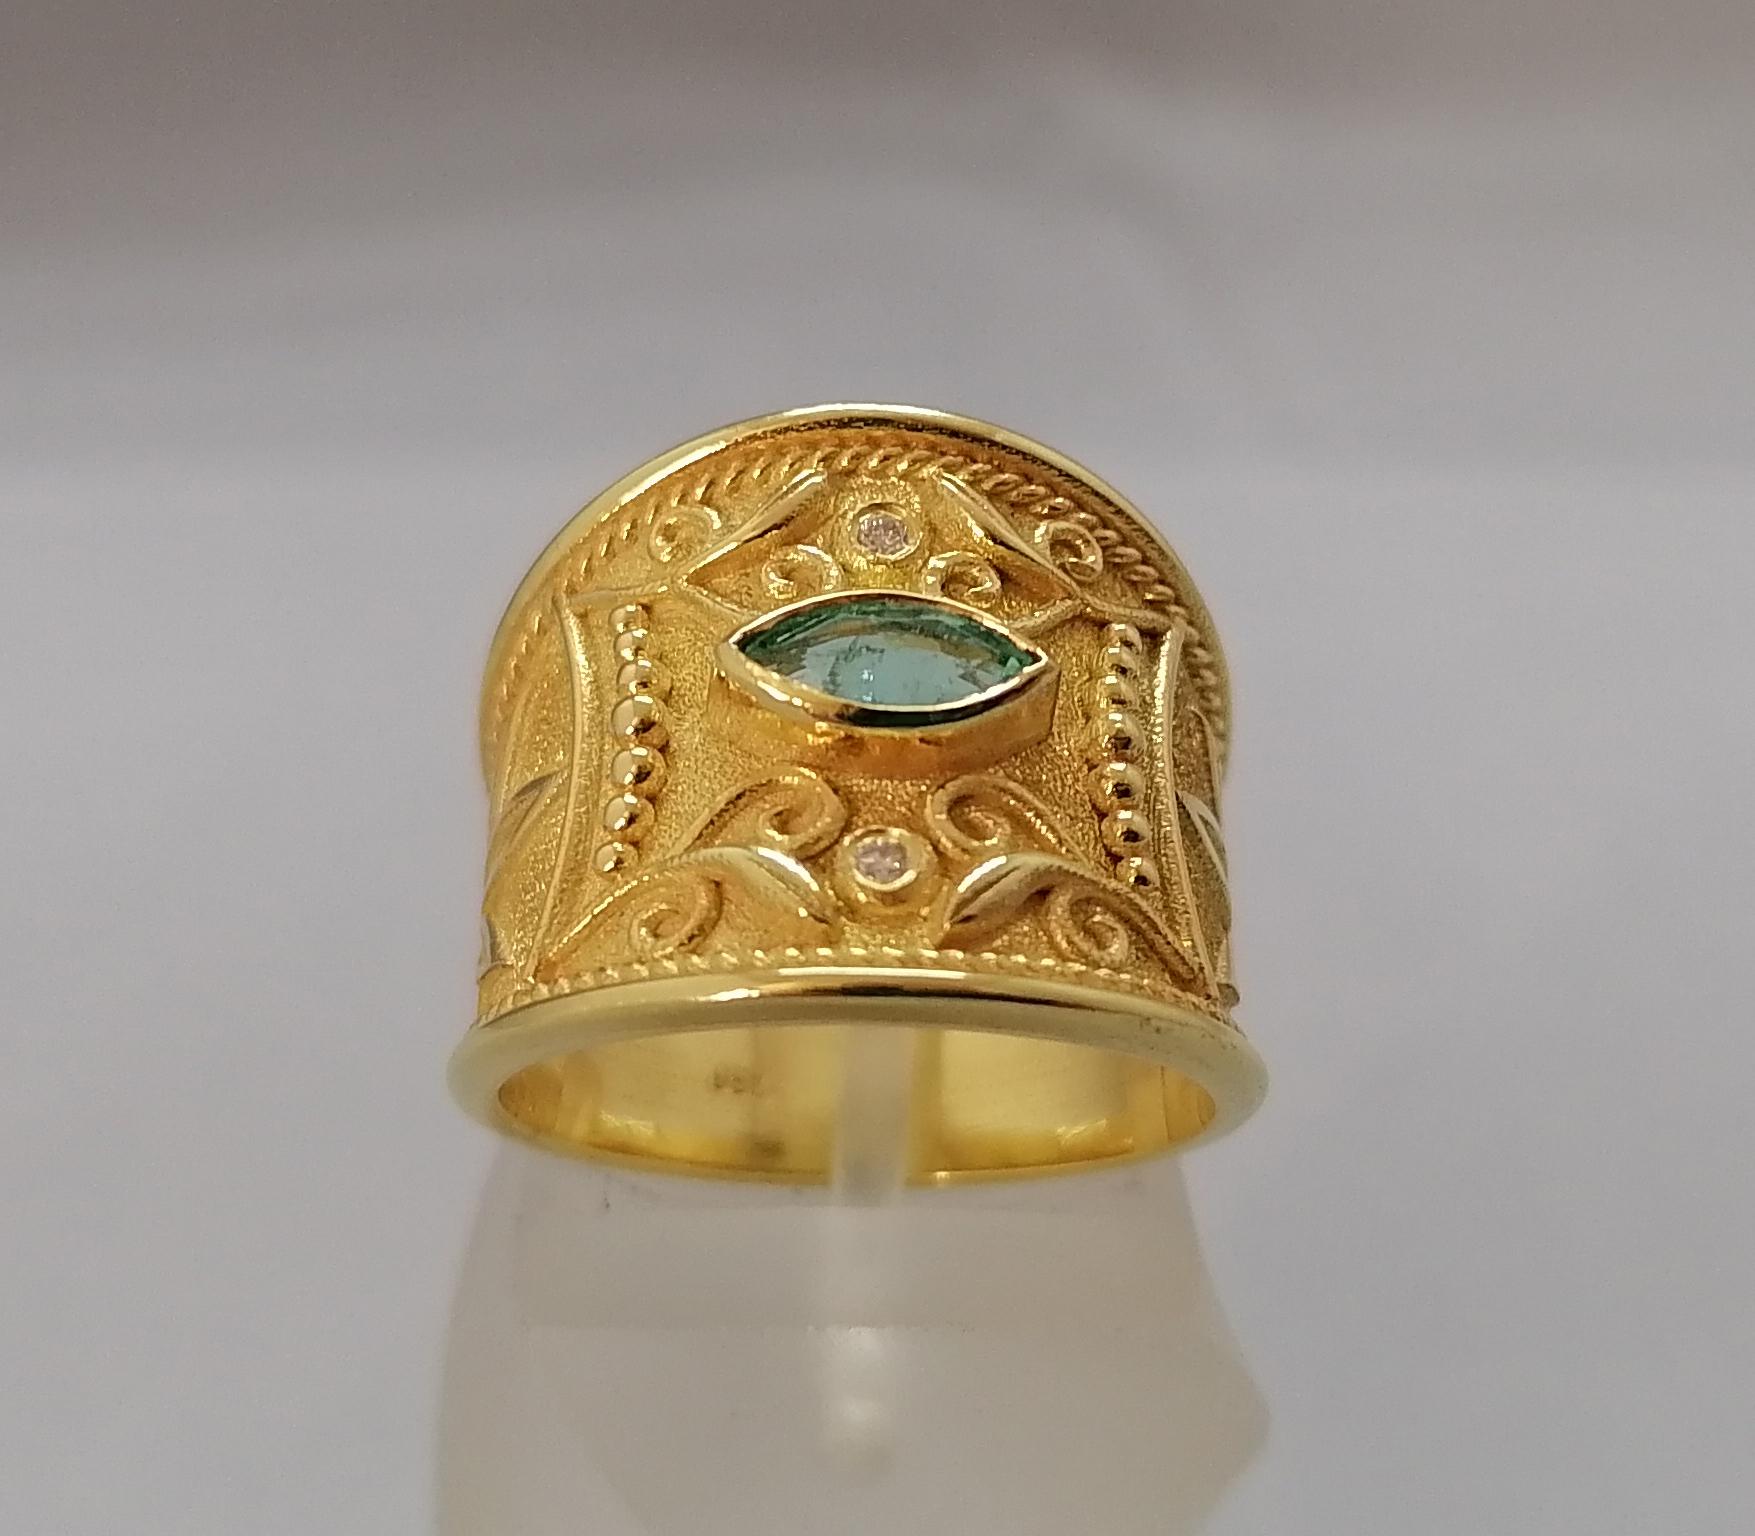 Cette bague de designer S.Georgios est en or jaune 18 carats. Elle est entièrement réalisée à la main avec une granulation de perles byzantines et une finition unique sur fond de velours. Cette magnifique bague comporte une émeraude naturelle de